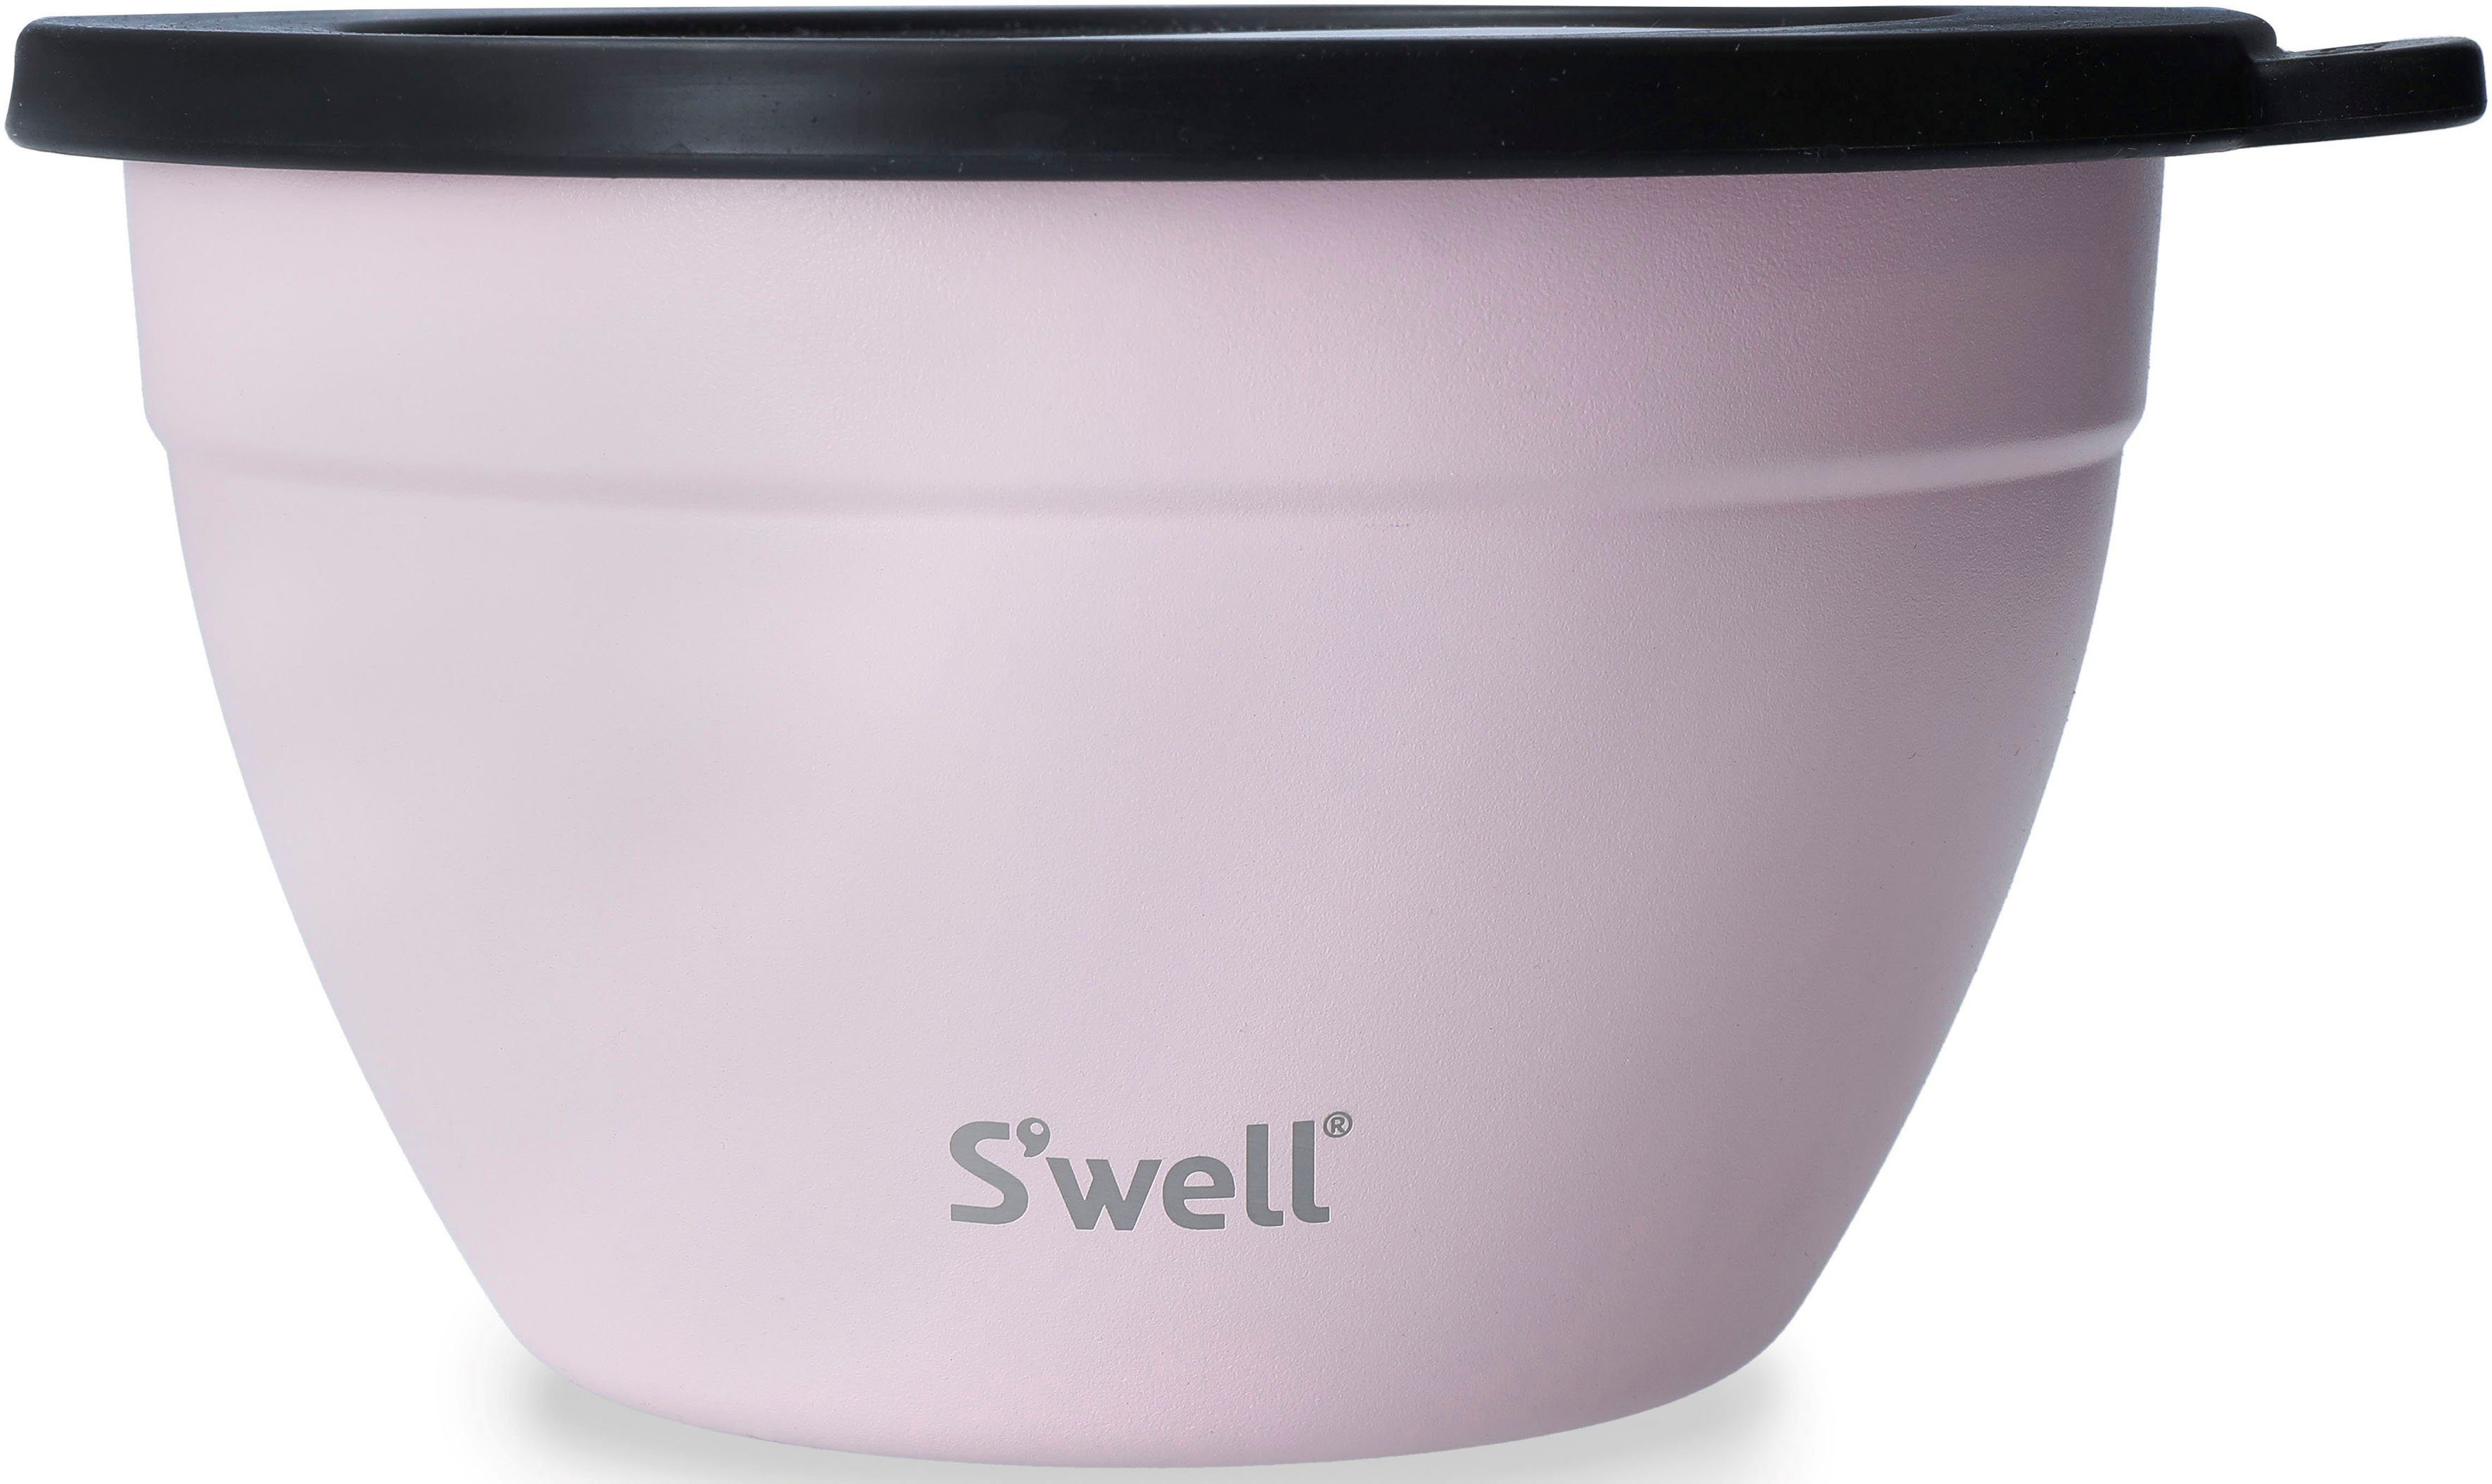 Topaz Therma-S'well®-Technologie mit Salad Gold Kit, Pink Außenschale Salatschüssel 1.9L, S'well vakuumisolierten Edelstahl, Bowl (3-tlg), Calacatta S'well